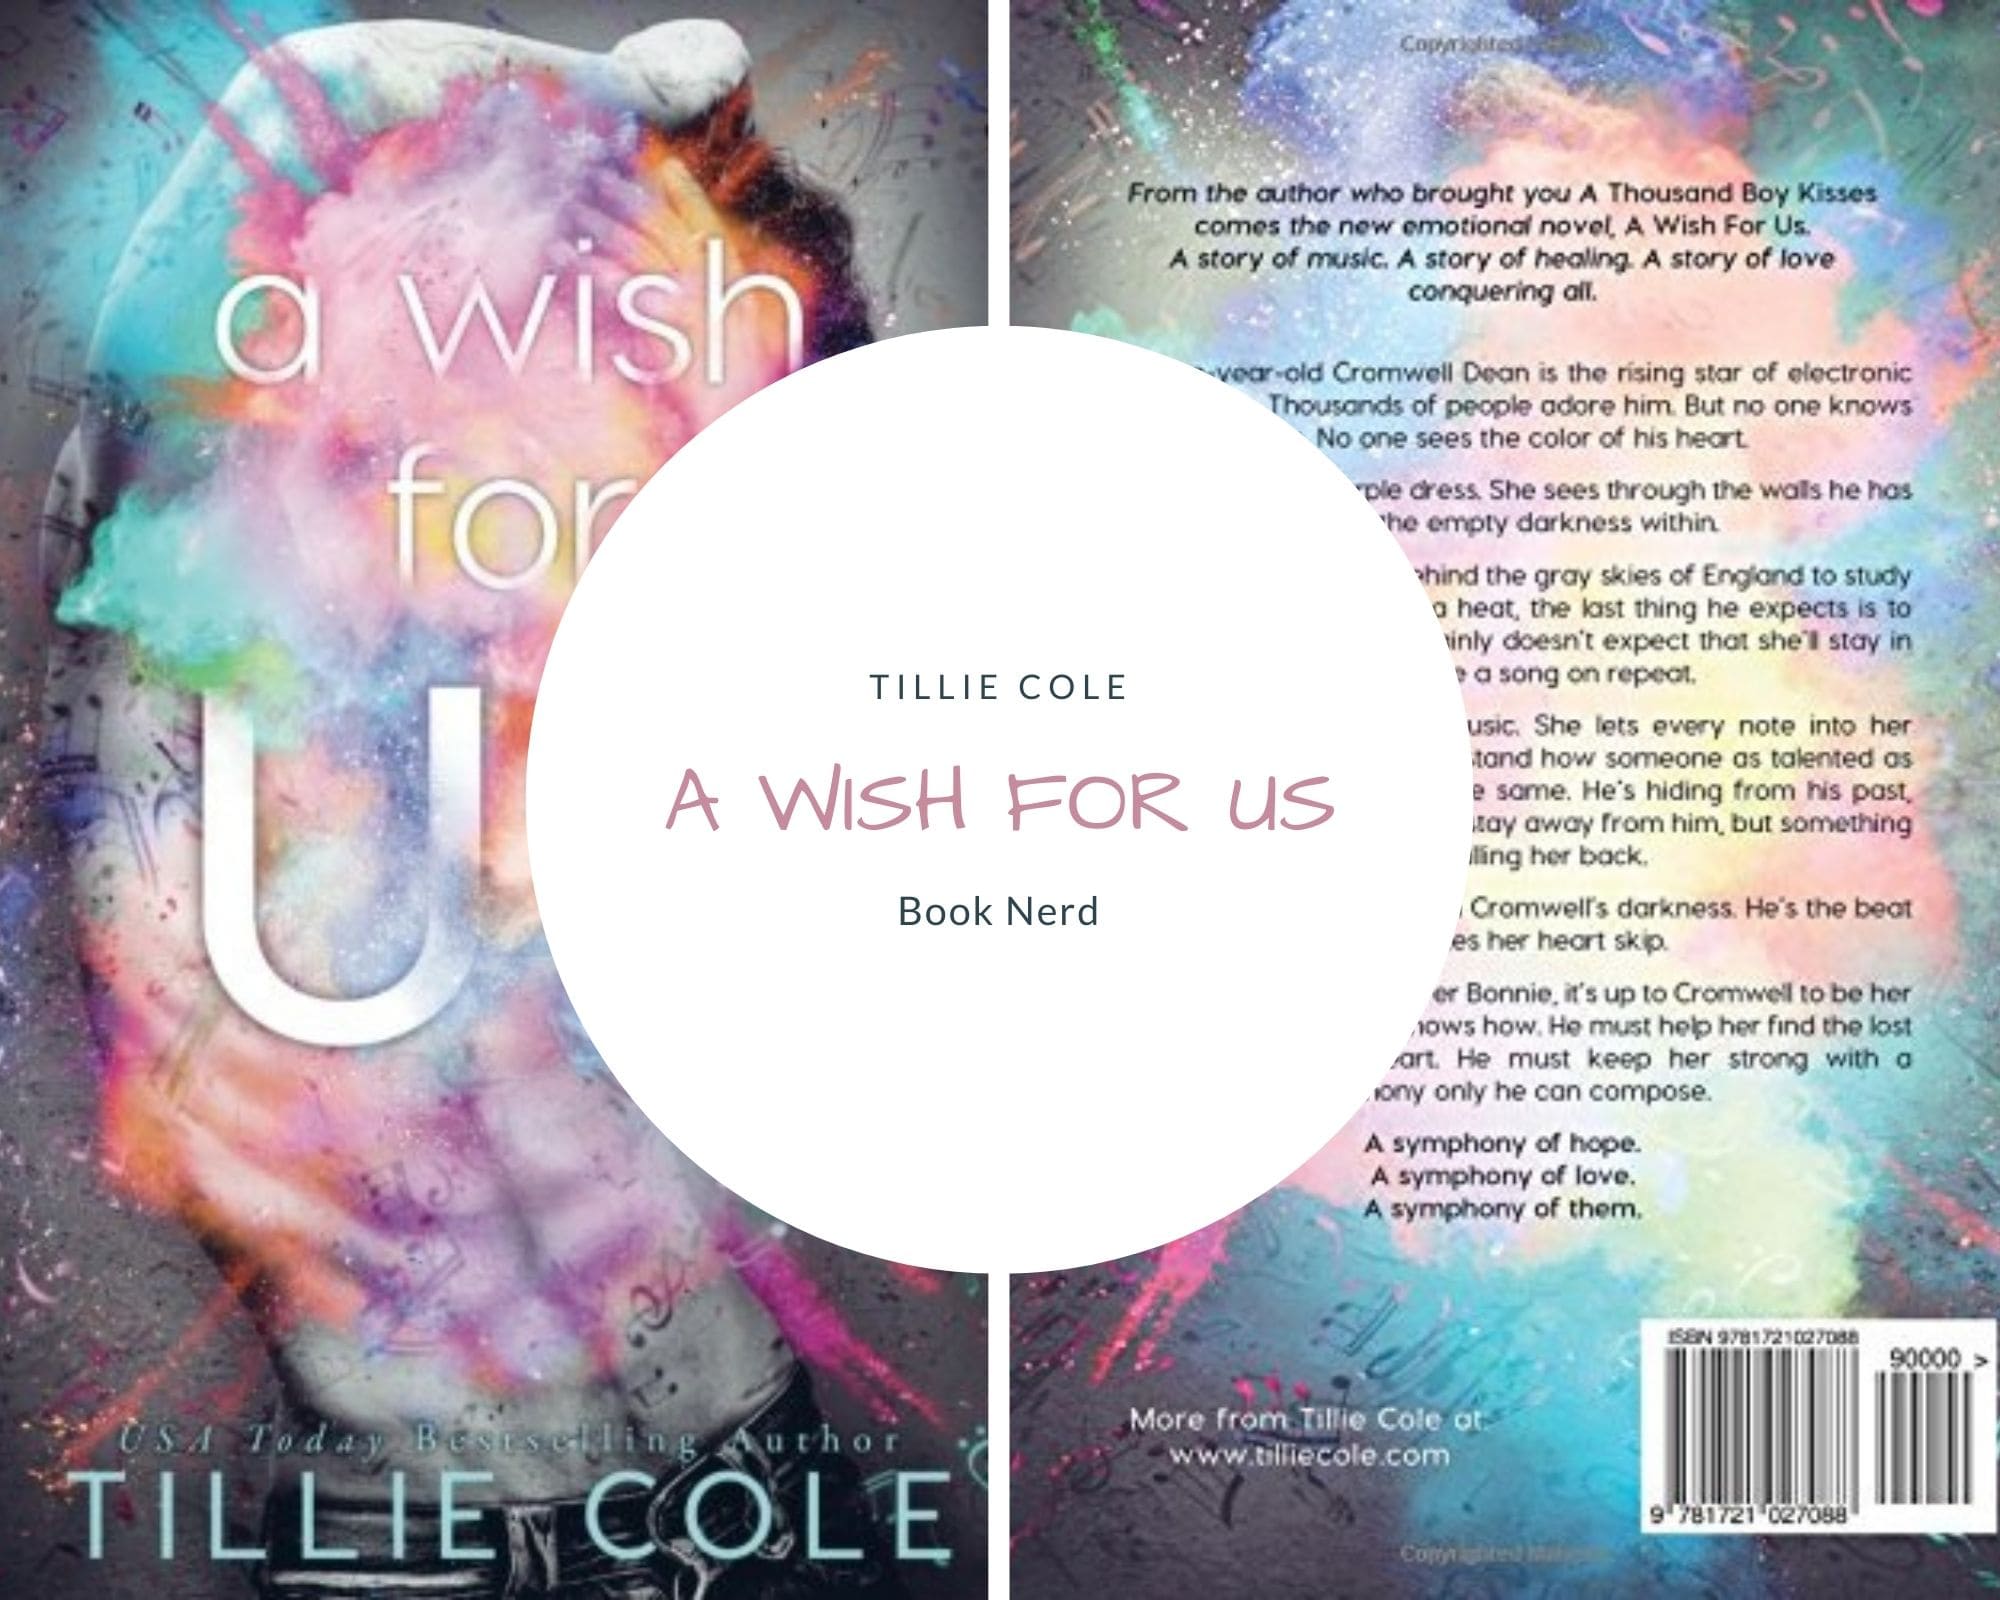 A wish for us - Romance - Tillie Cole